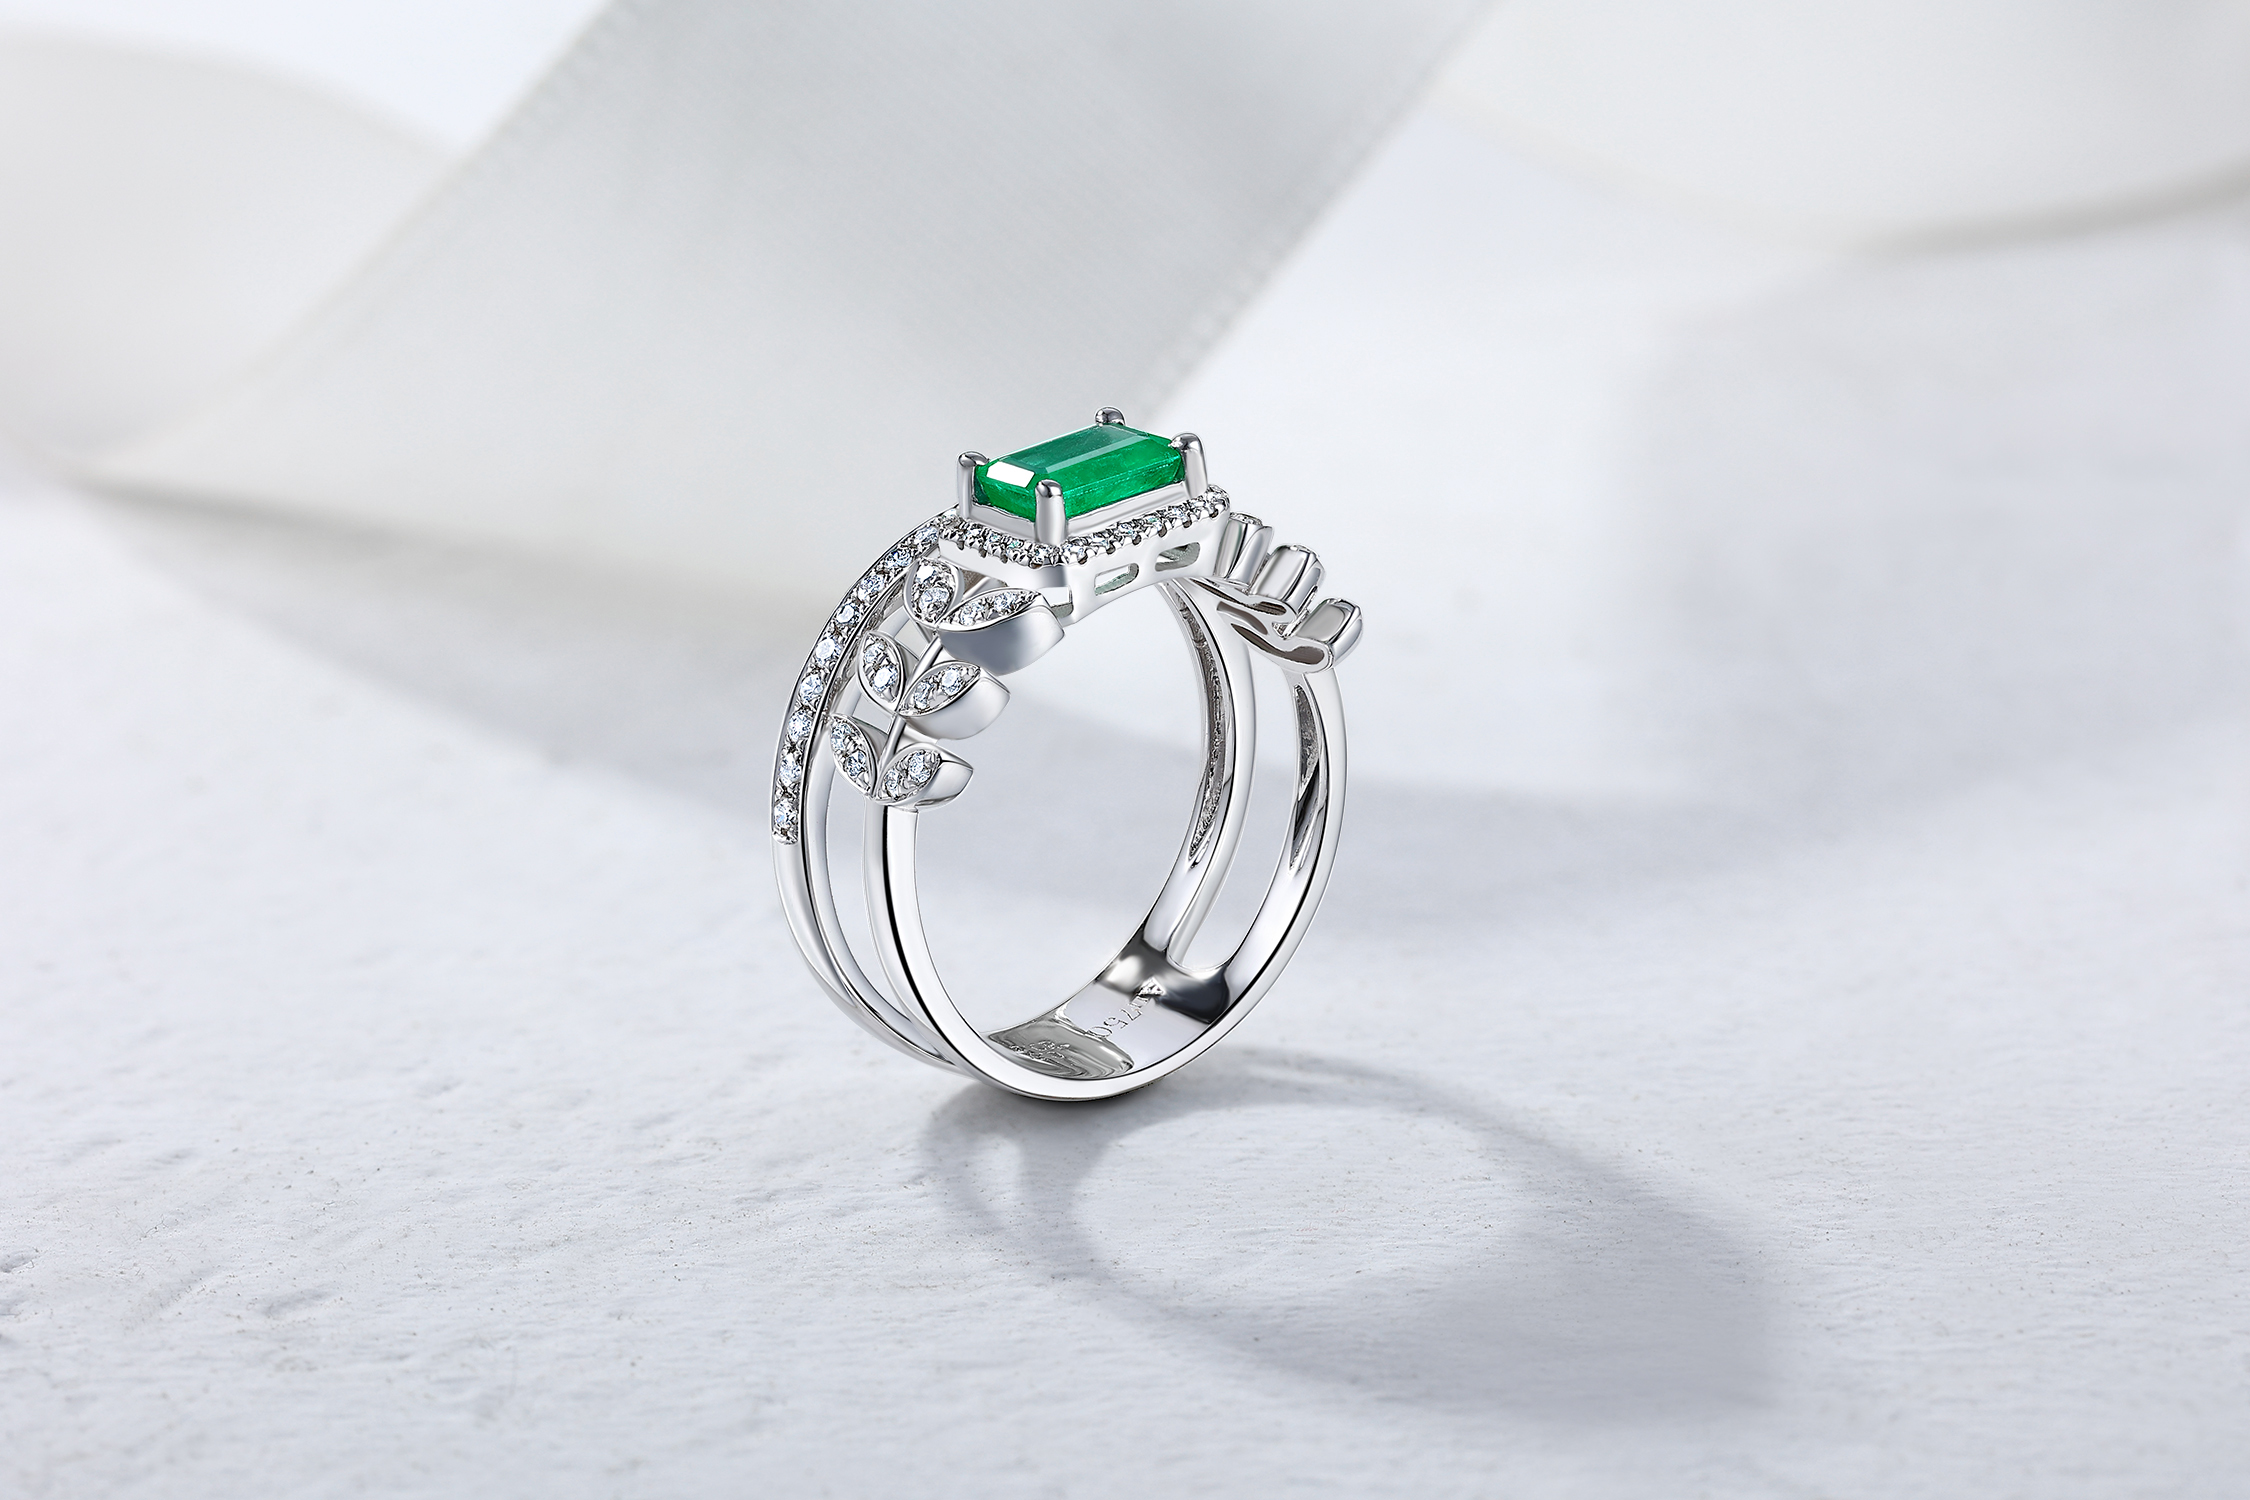 正品18K白金镶嵌天然祖母绿钻石珠宝戒指送礼指环首饰可定制定做